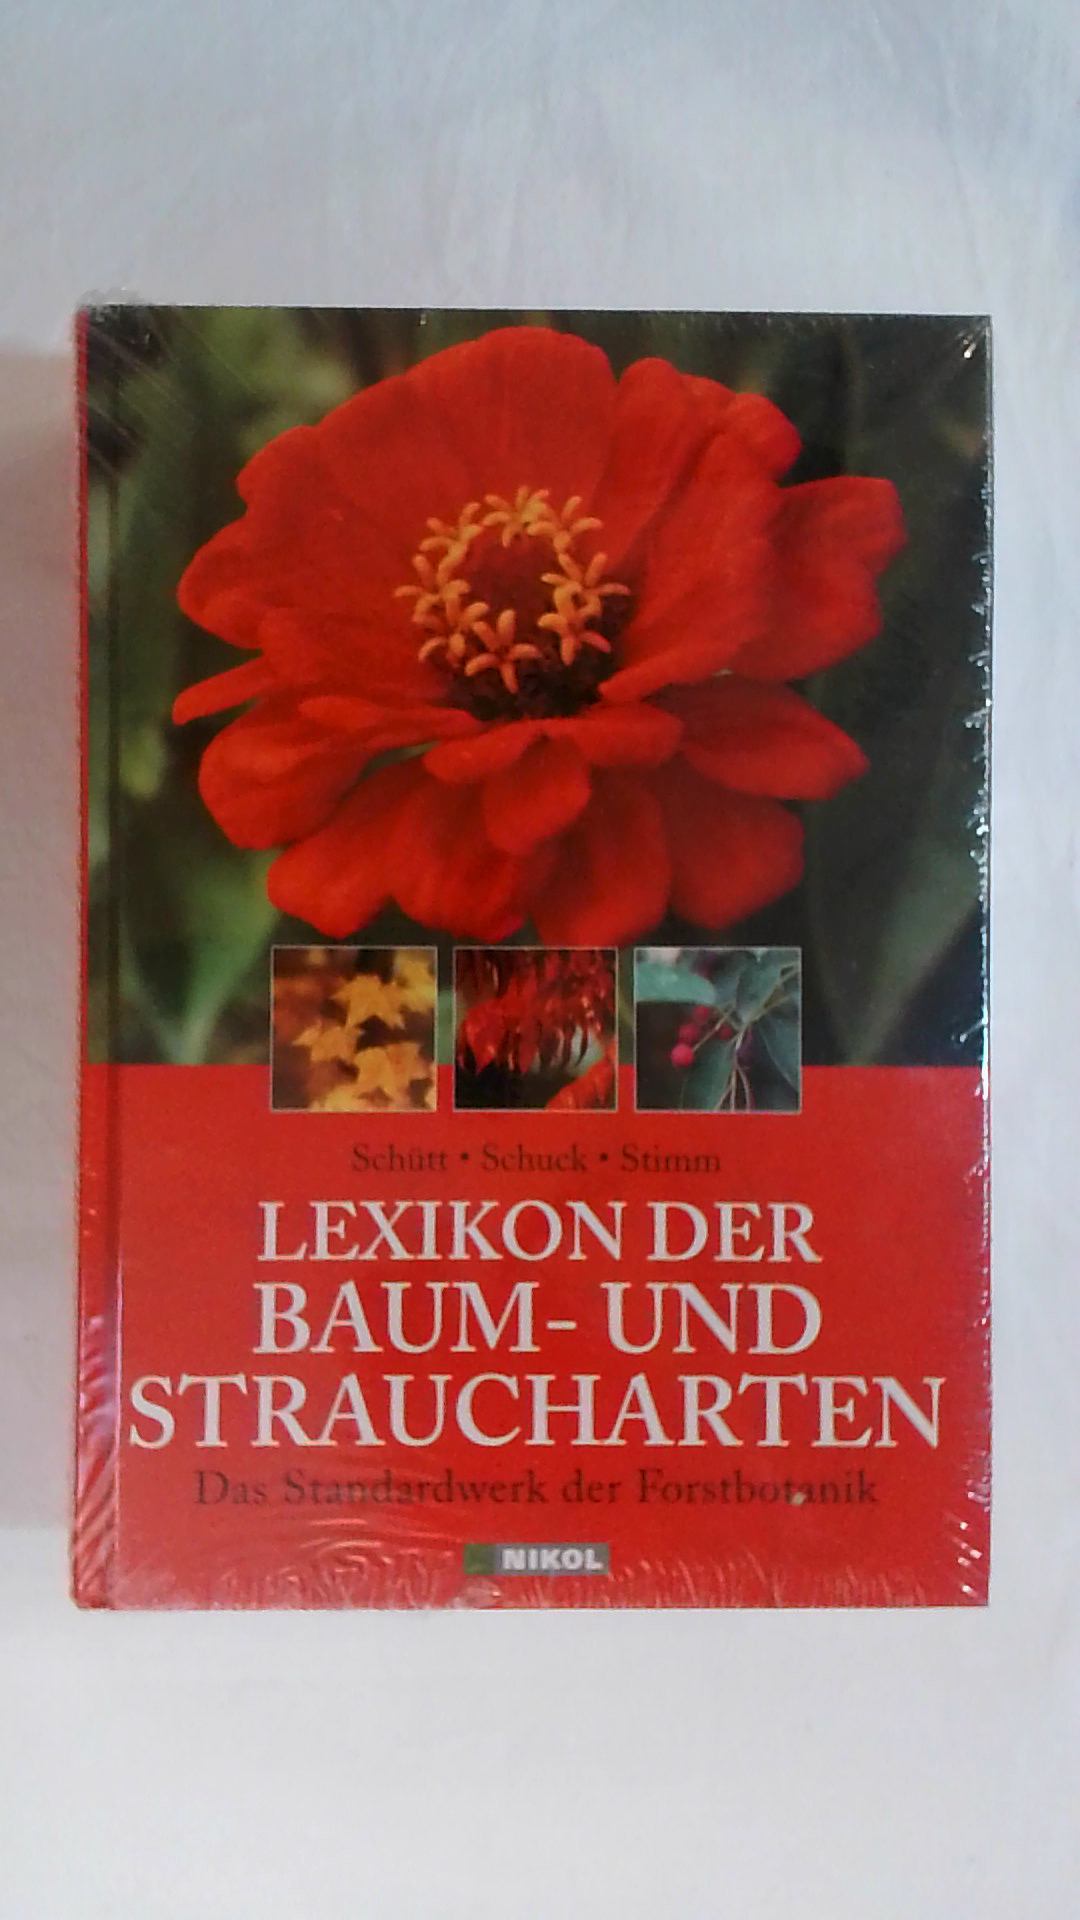 LEXIKON DER BAUM- UND STRAUCHARTEN: DAS STANDARDWERK DER FORSTBOTANIK: MORPHOLOGIE, PATHOLOGIE, ÖKOLOGIE UND SYSTEMATIK WICHTIGER BAUM- UND STRAUCHARTEN. - P. Schütt, H.J. Schuck, B. Stimm